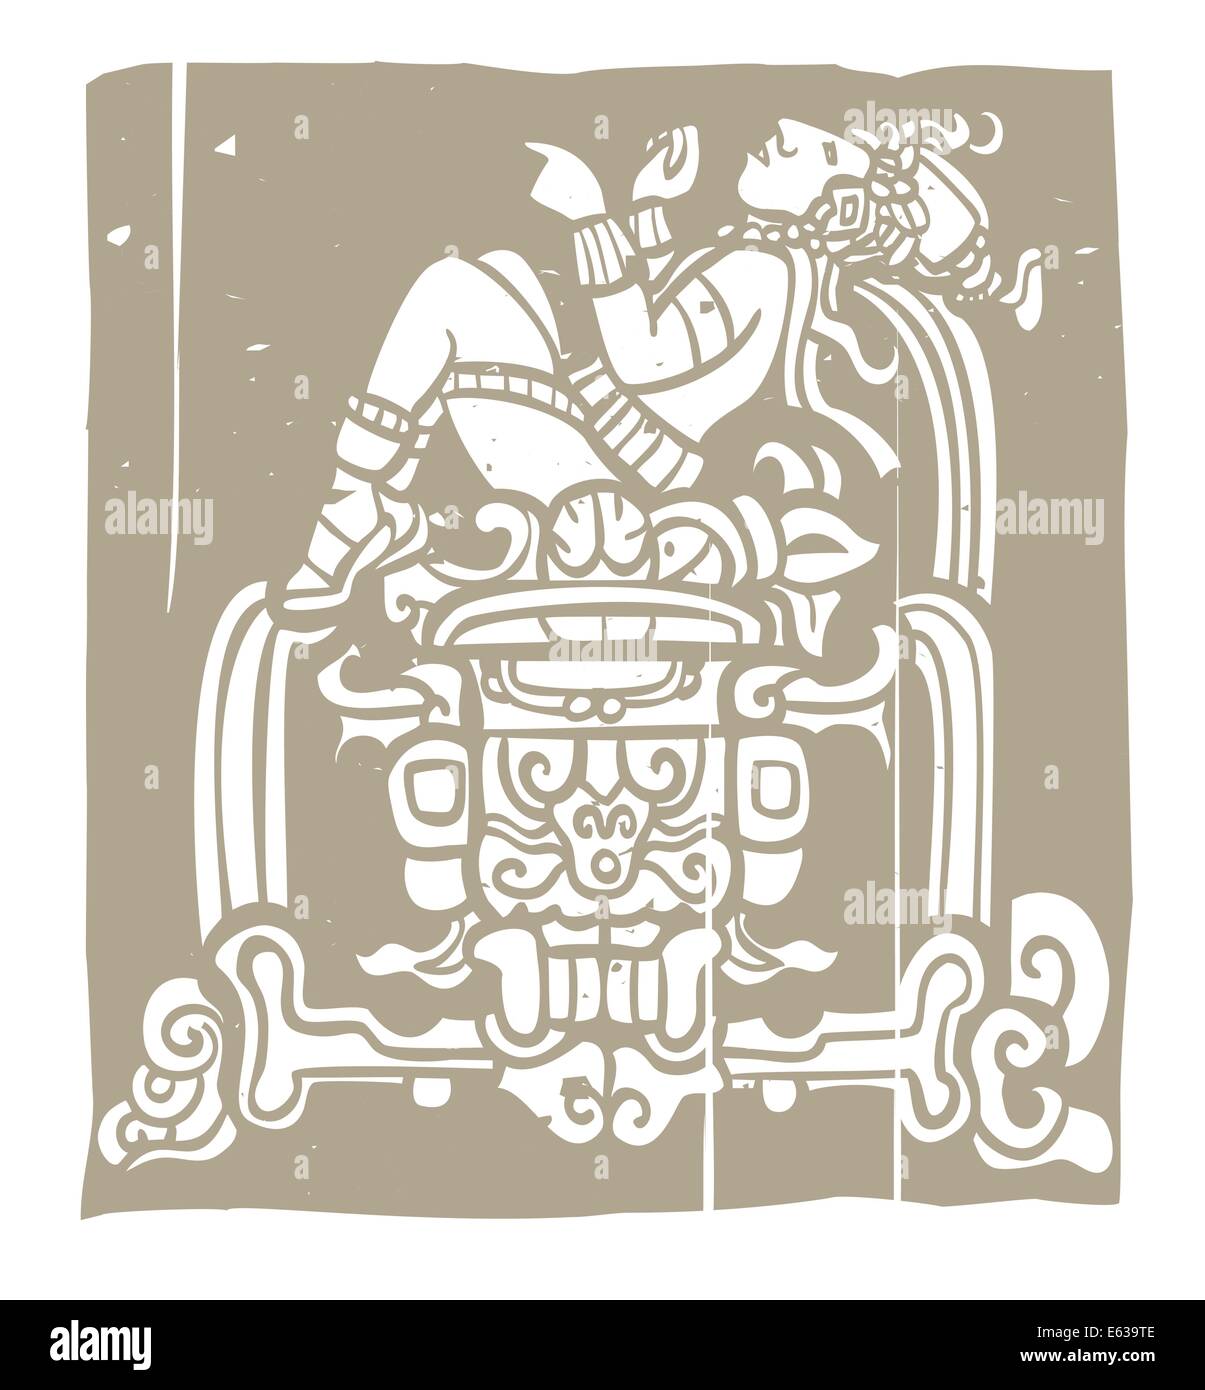 Maya inclinables avec trône adapté de temple des images. Illustration de Vecteur